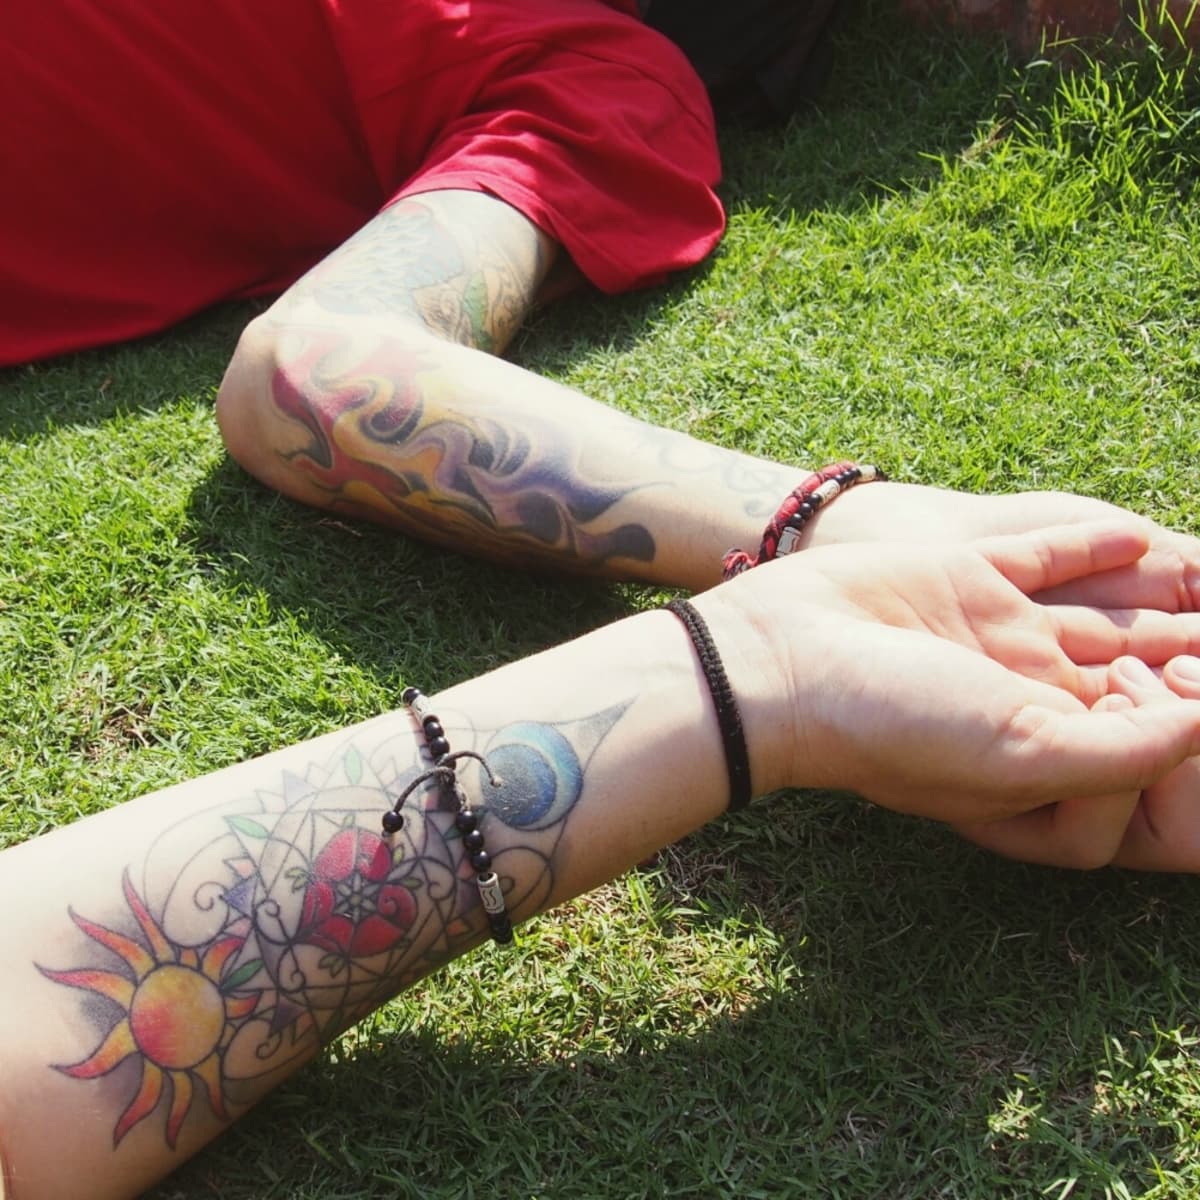 Leaves vine wraps around forearm. #leavestattoo #forearmtattoo #vinetattoo  #finelinetattoo #nyctattoo #nyctattooartist #tattoo #tattooart... |  Instagram